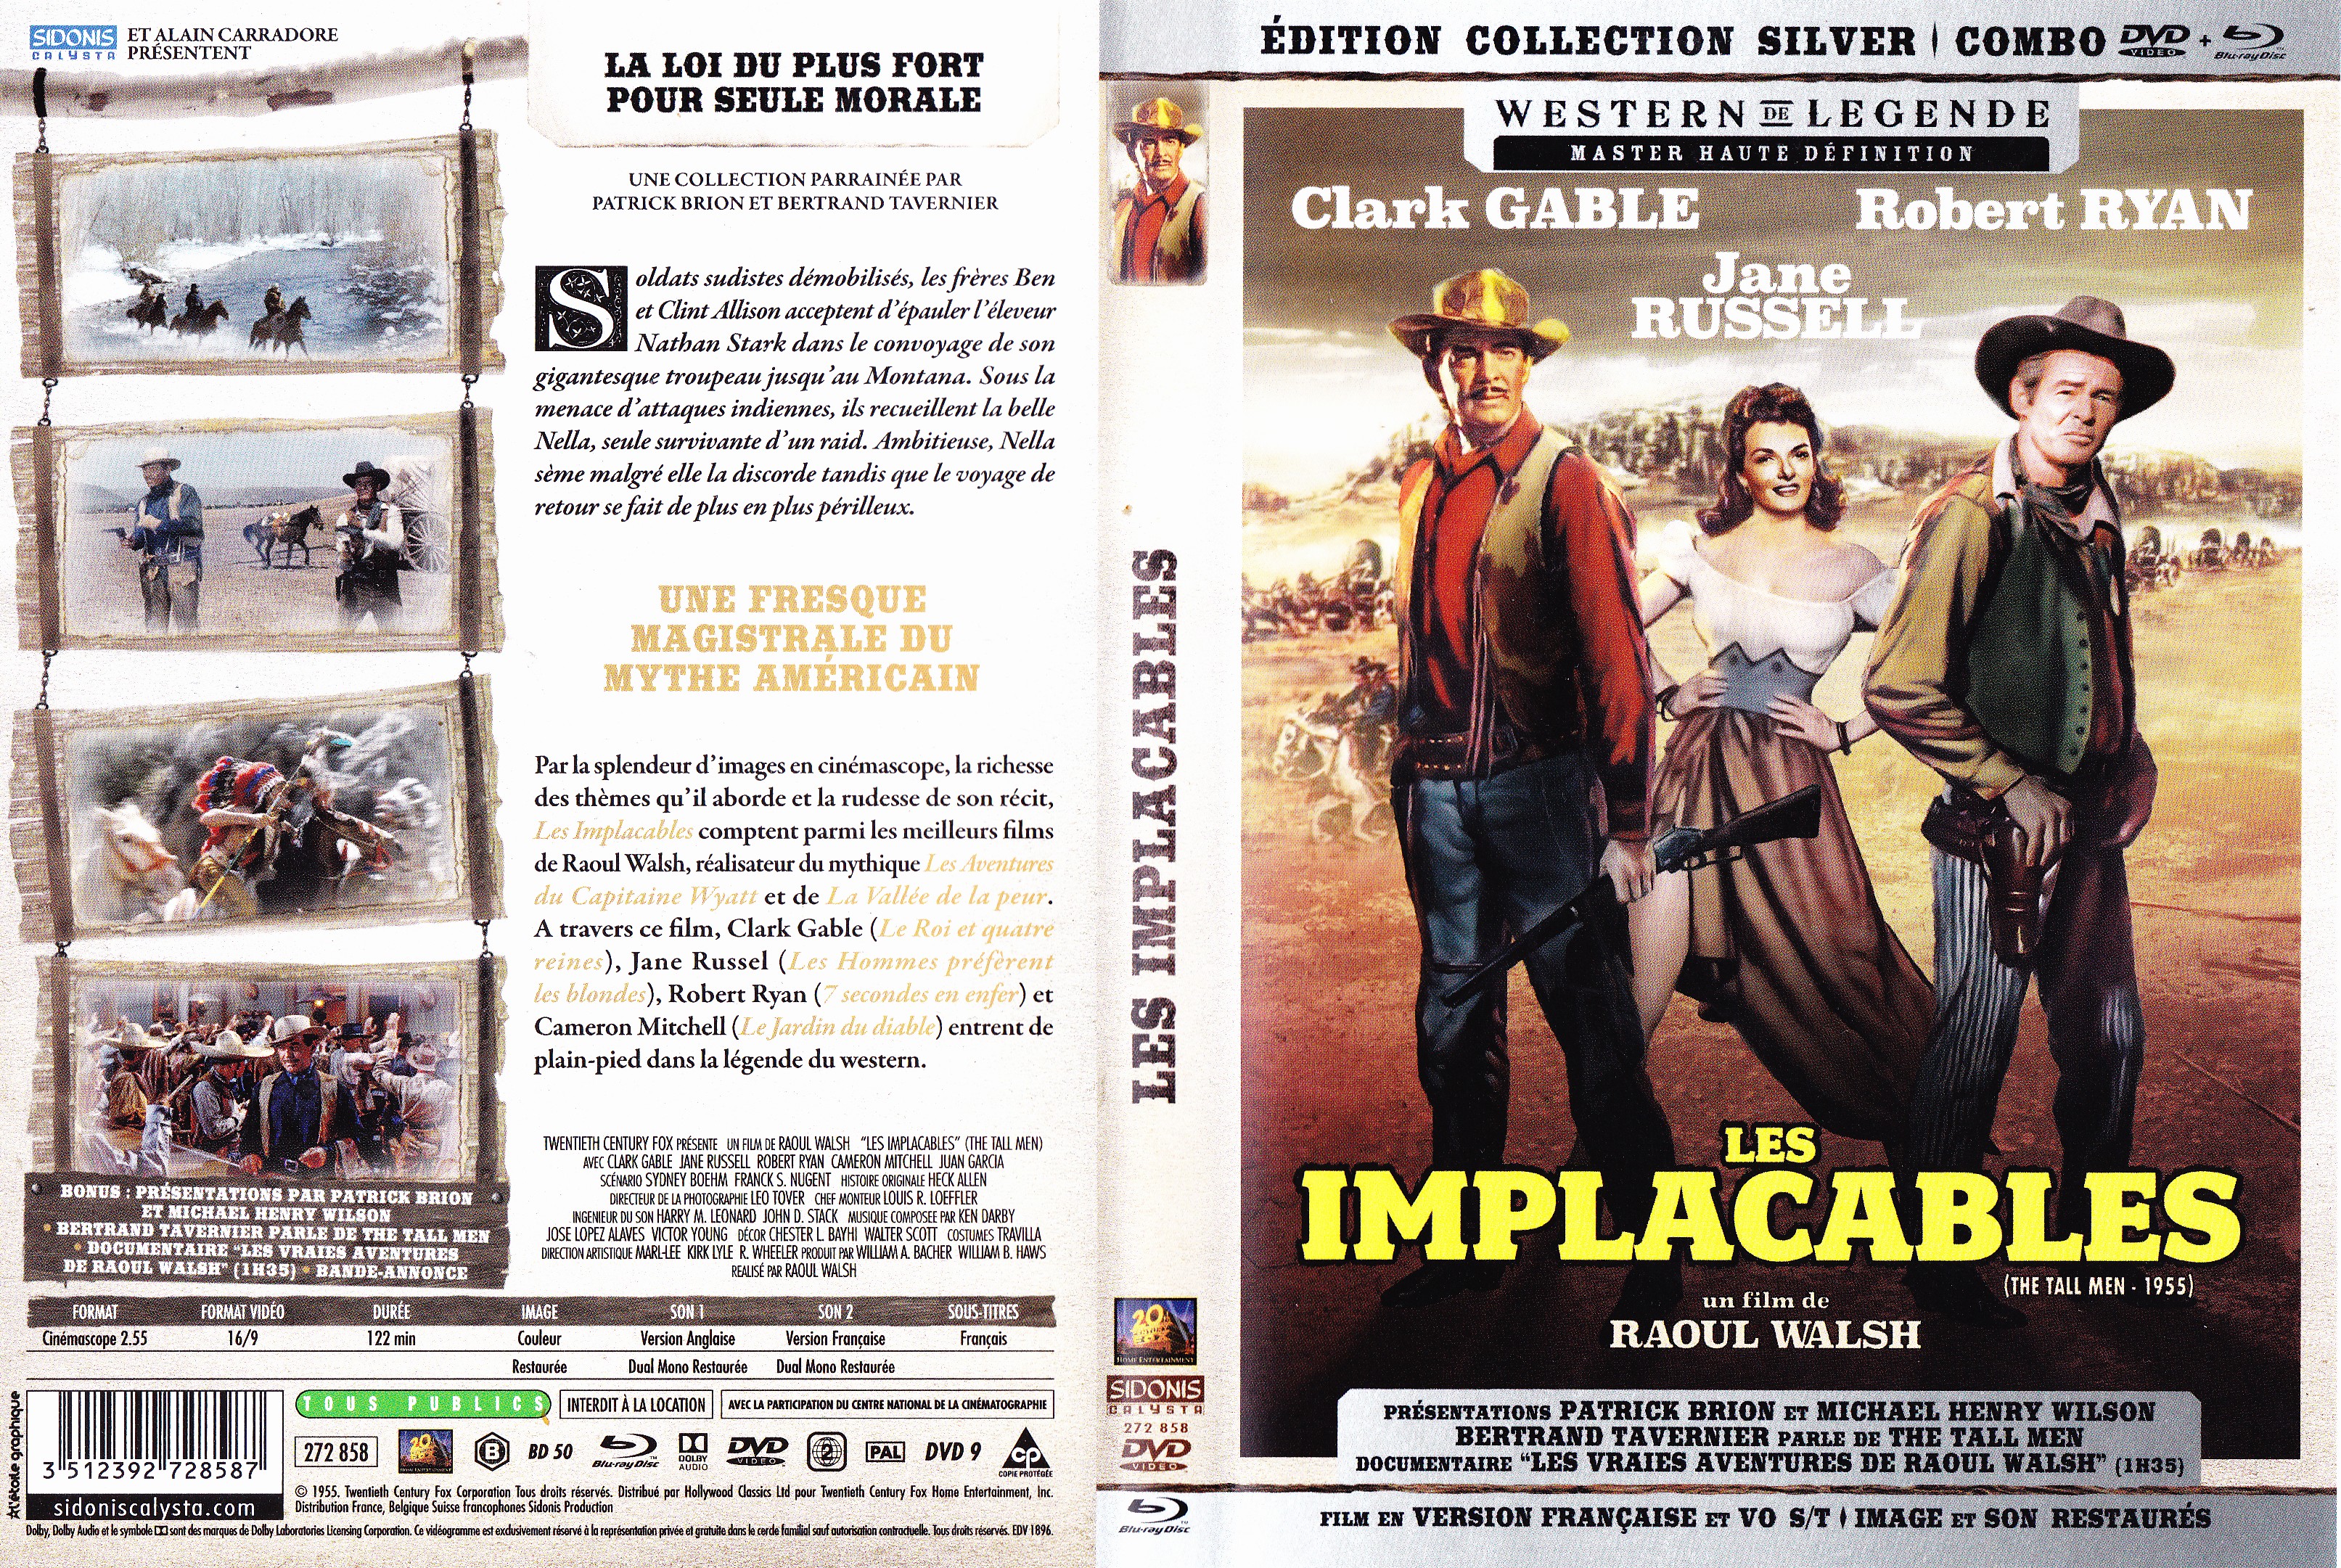 Jaquette DVD Les implacables v2